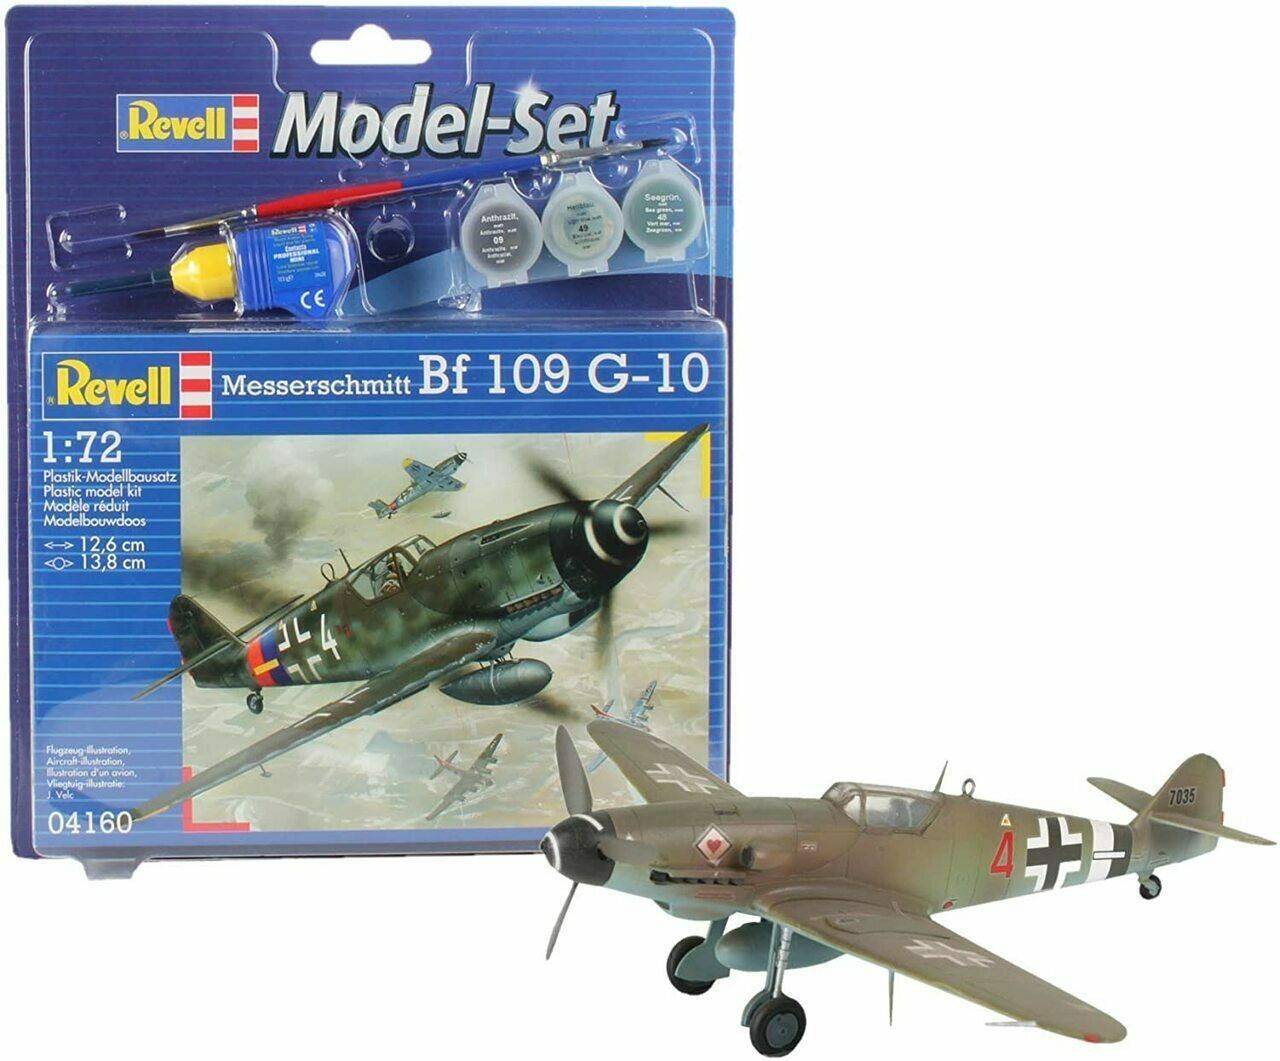 Revell 64160 Bf 109 G-10 Messerschmitt 1:72  " Model-Set "